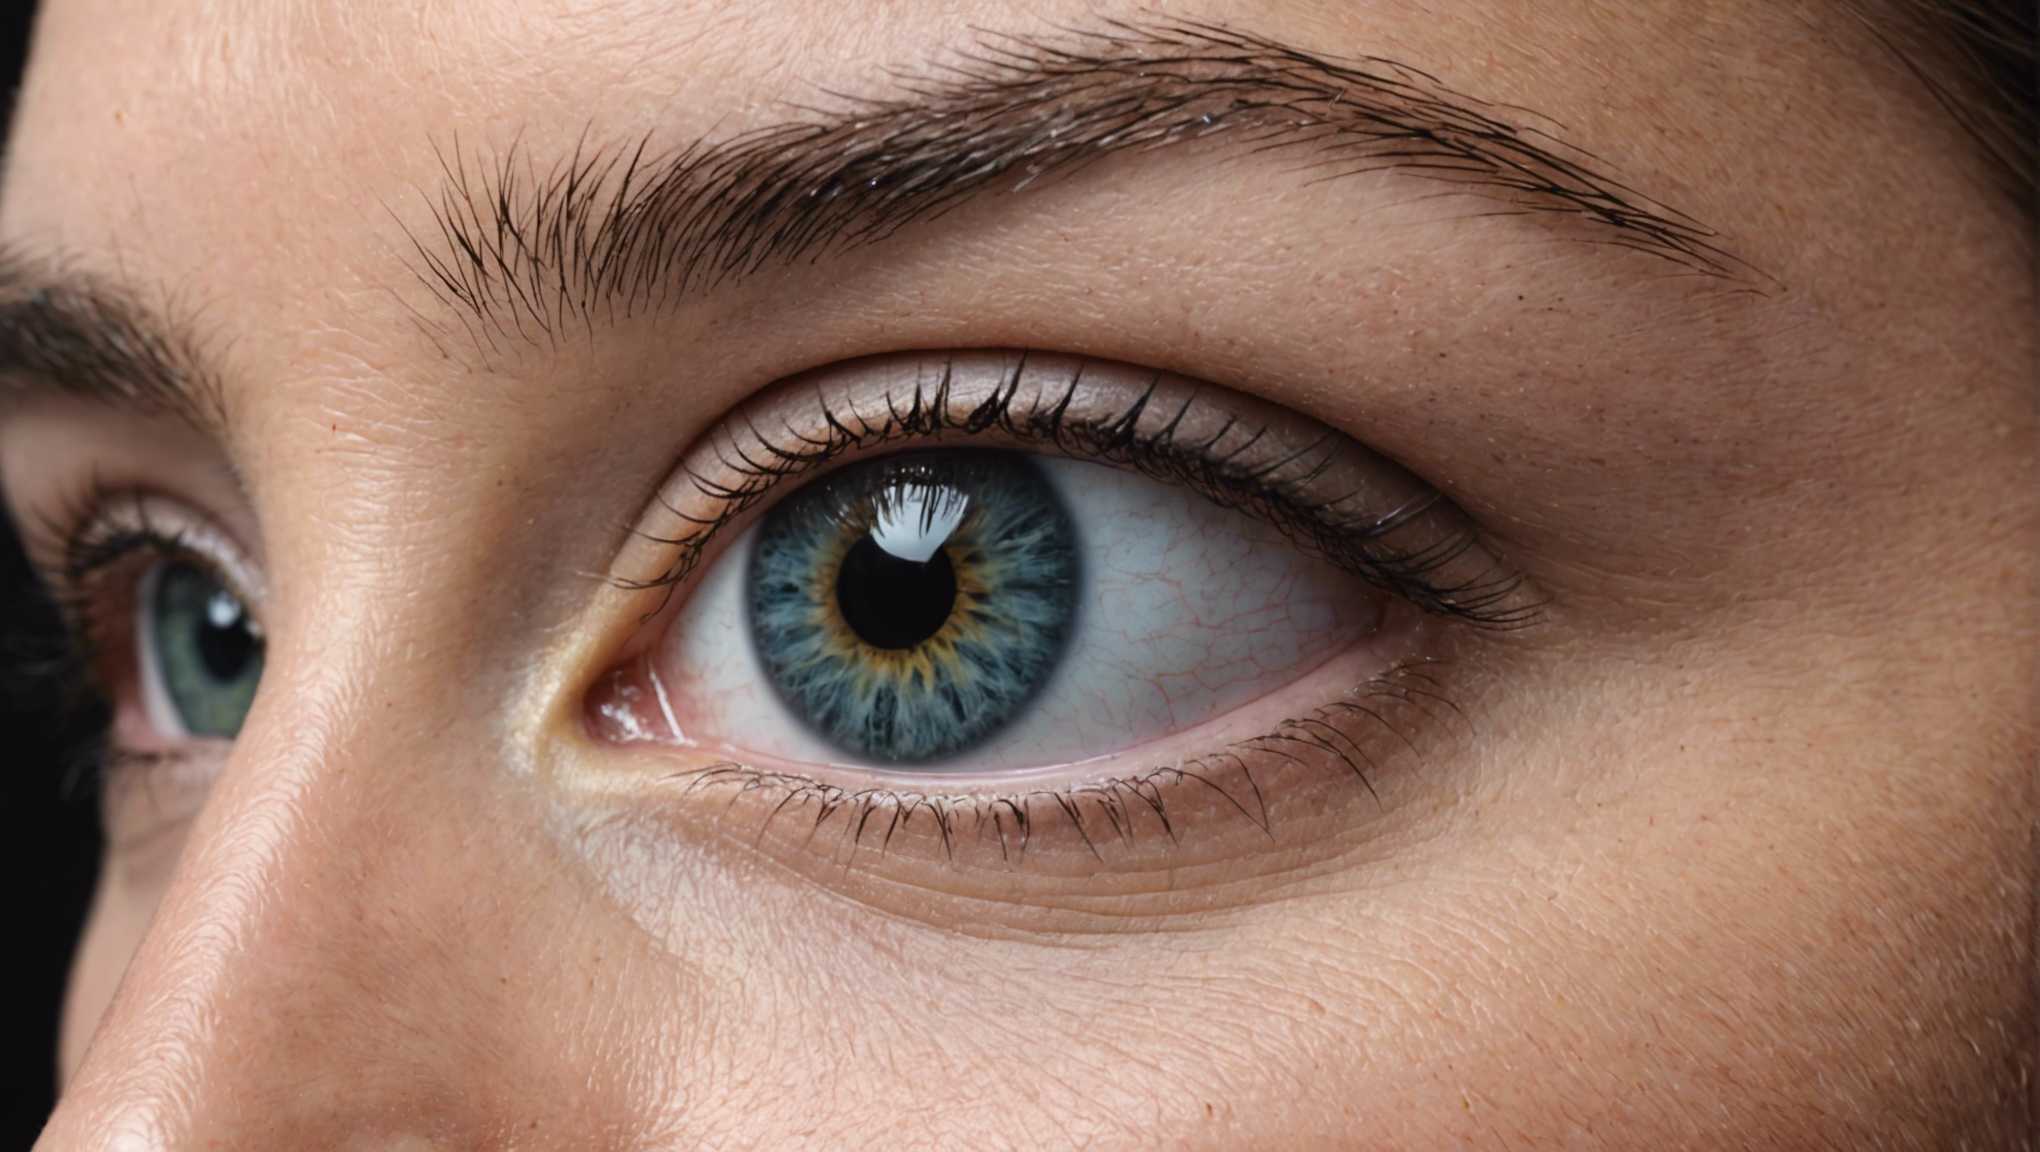 découvrez les critères d'éligibilité pour la chirurgie des yeux et trouvez les réponses à vos questions sur ce traitement. consultez nos spécialistes pour en savoir plus.